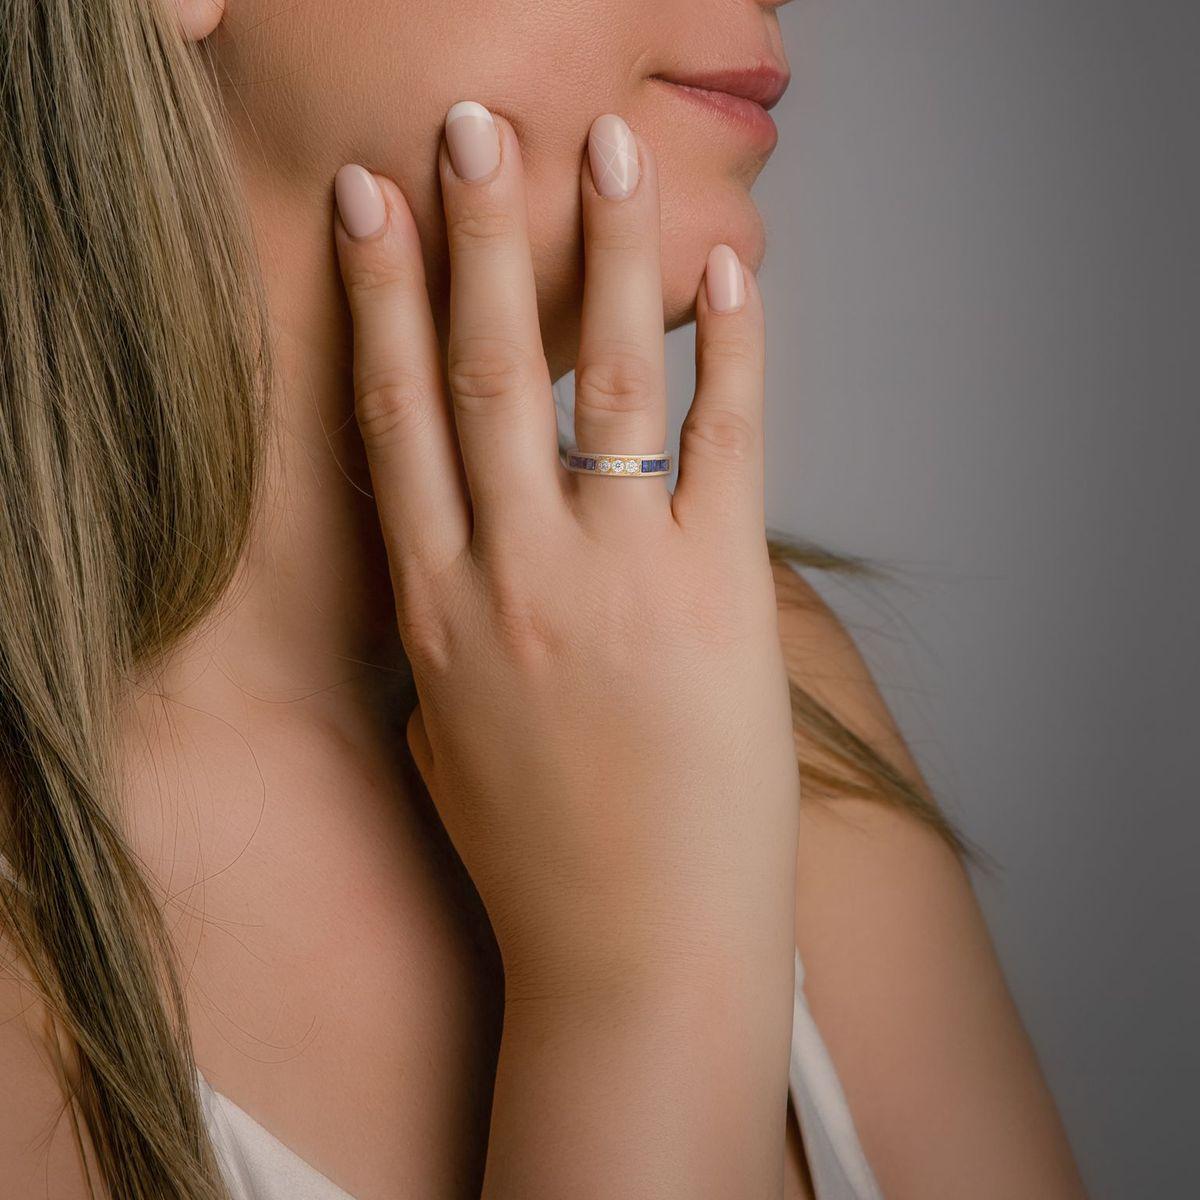 Das Herzstück dieses Rings besteht aus einer bezaubernden Anordnung tiefblauer Saphire, die ein Gefühl von Königlichkeit und Eleganz hervorrufen. Zwischen den Saphiren befinden sich Brillanten, die aufgrund ihres außergewöhnlichen Schliffs und ihrer